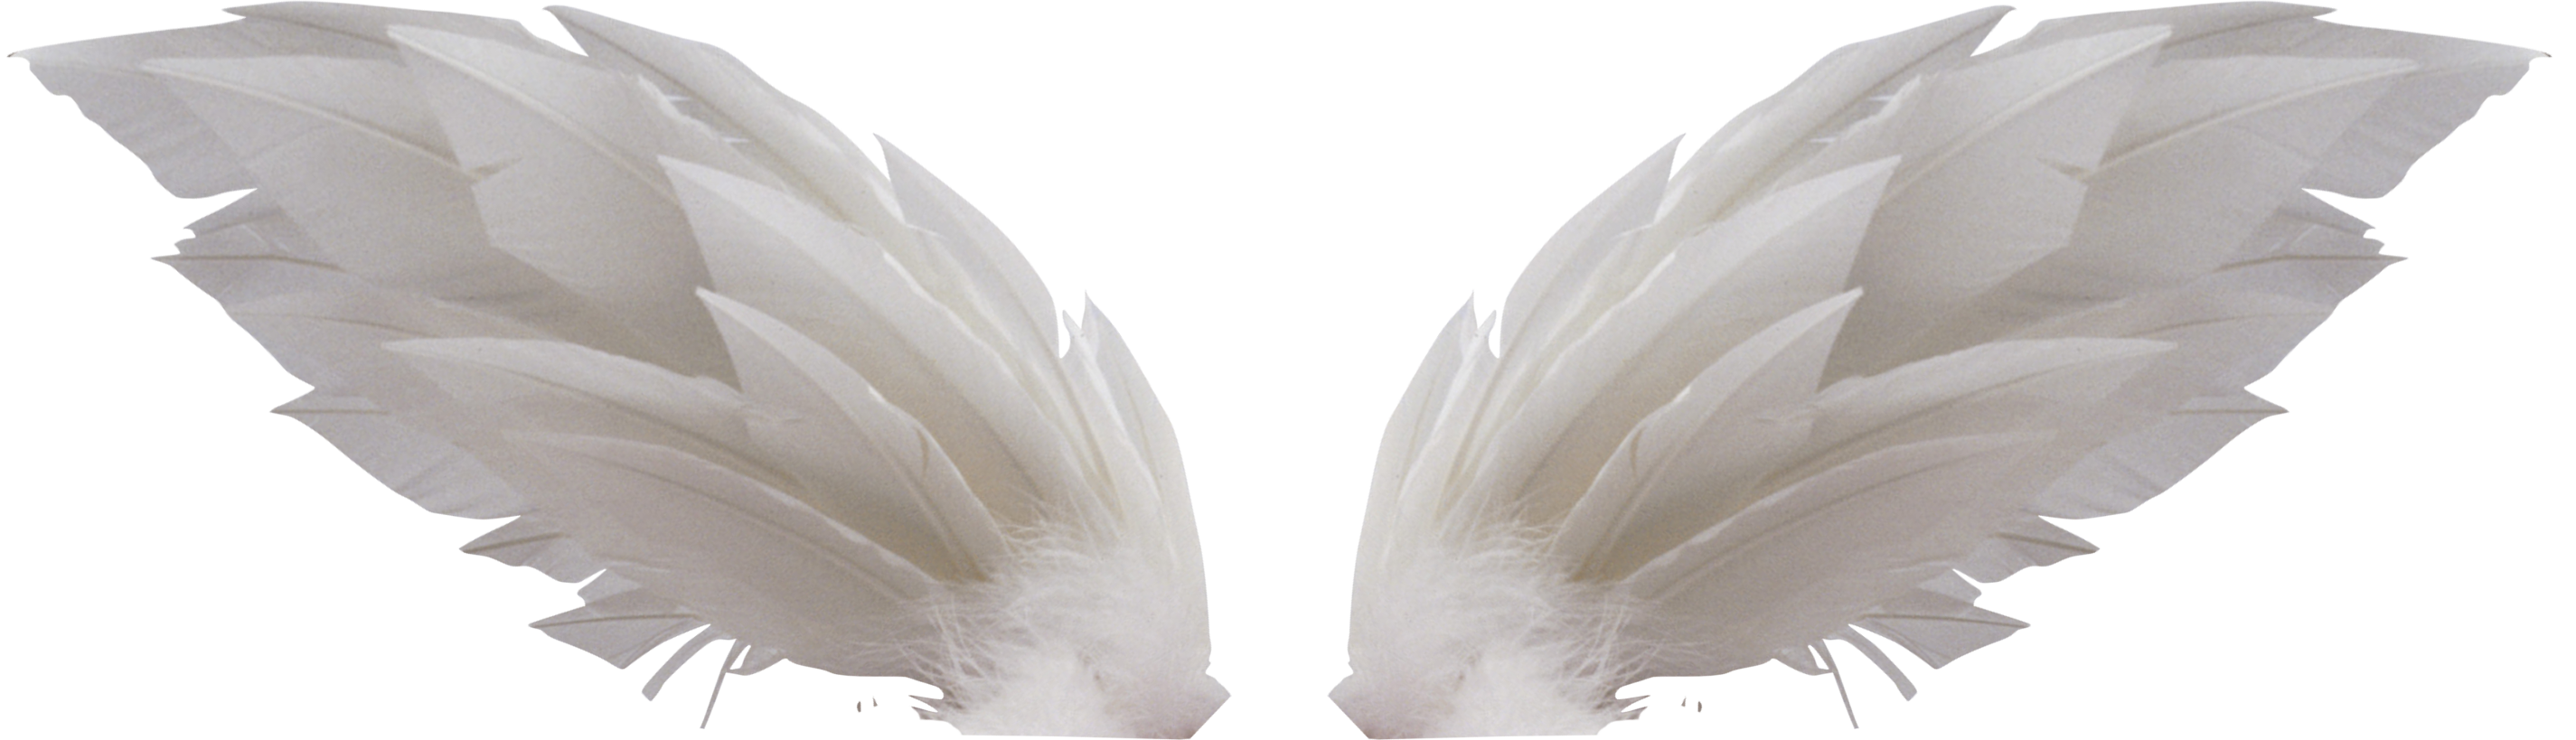 ปีกสีขาว